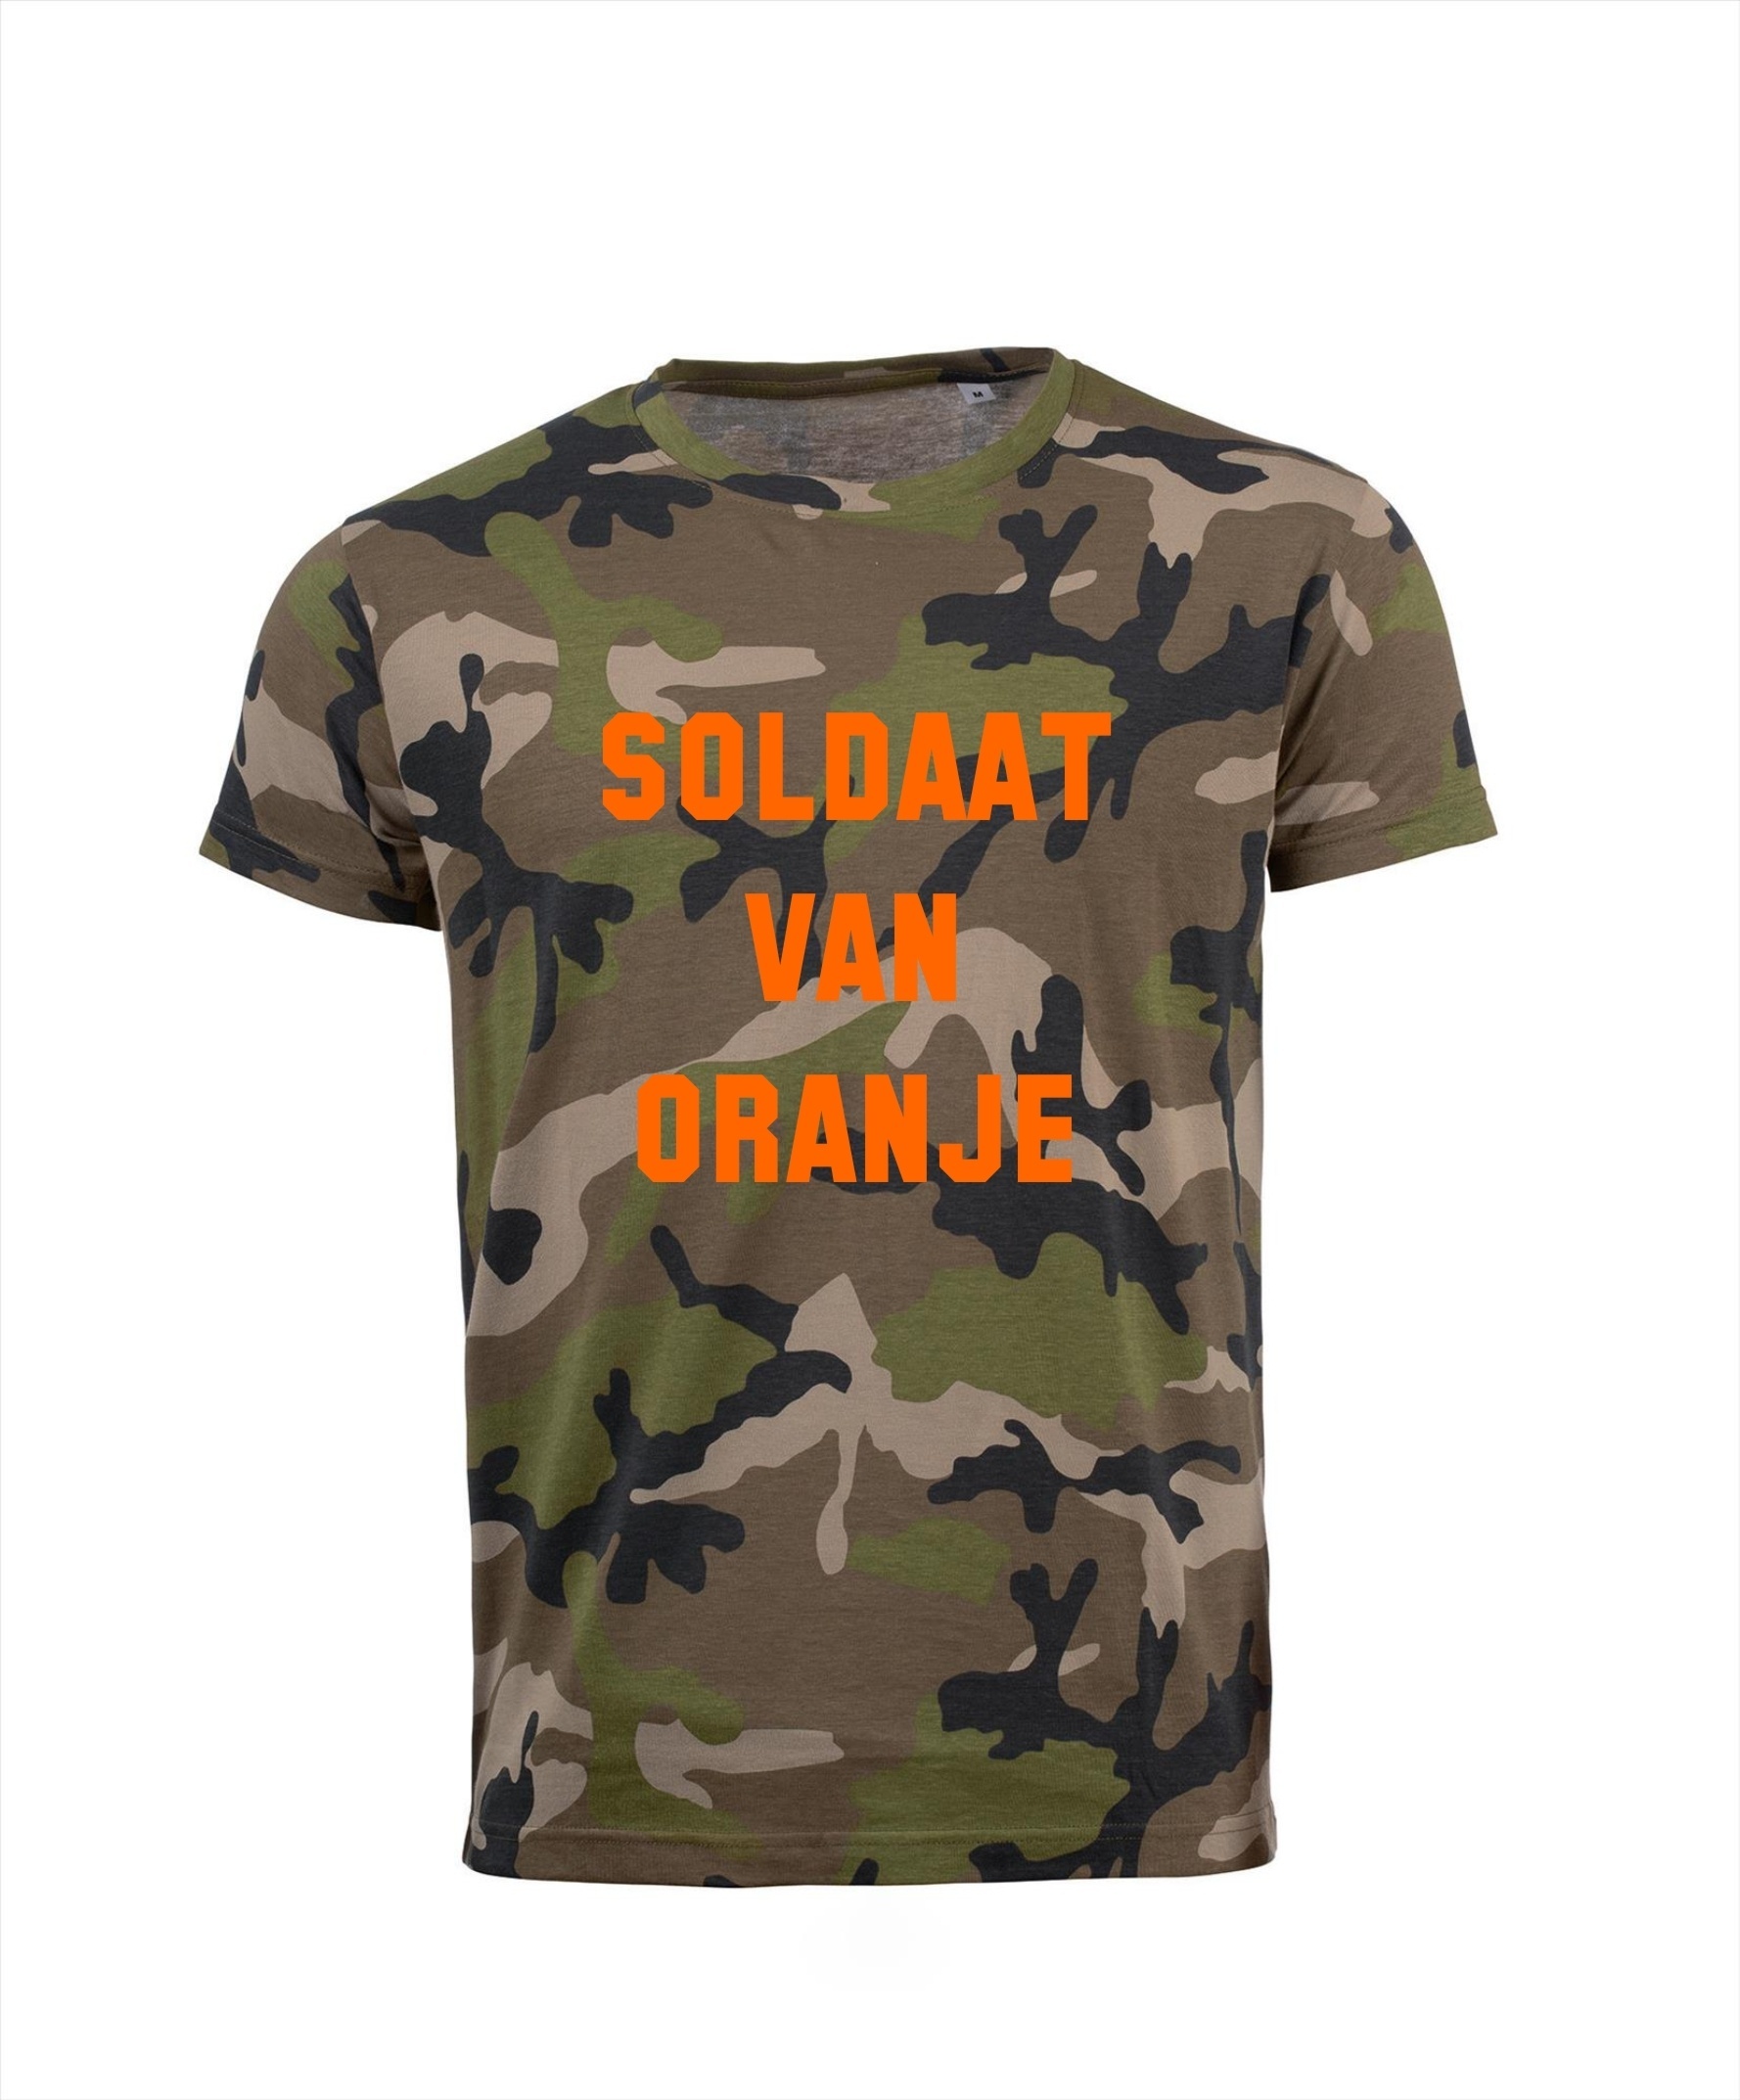 T-shirt soldaat van oranje camouflage legergroen carnaval